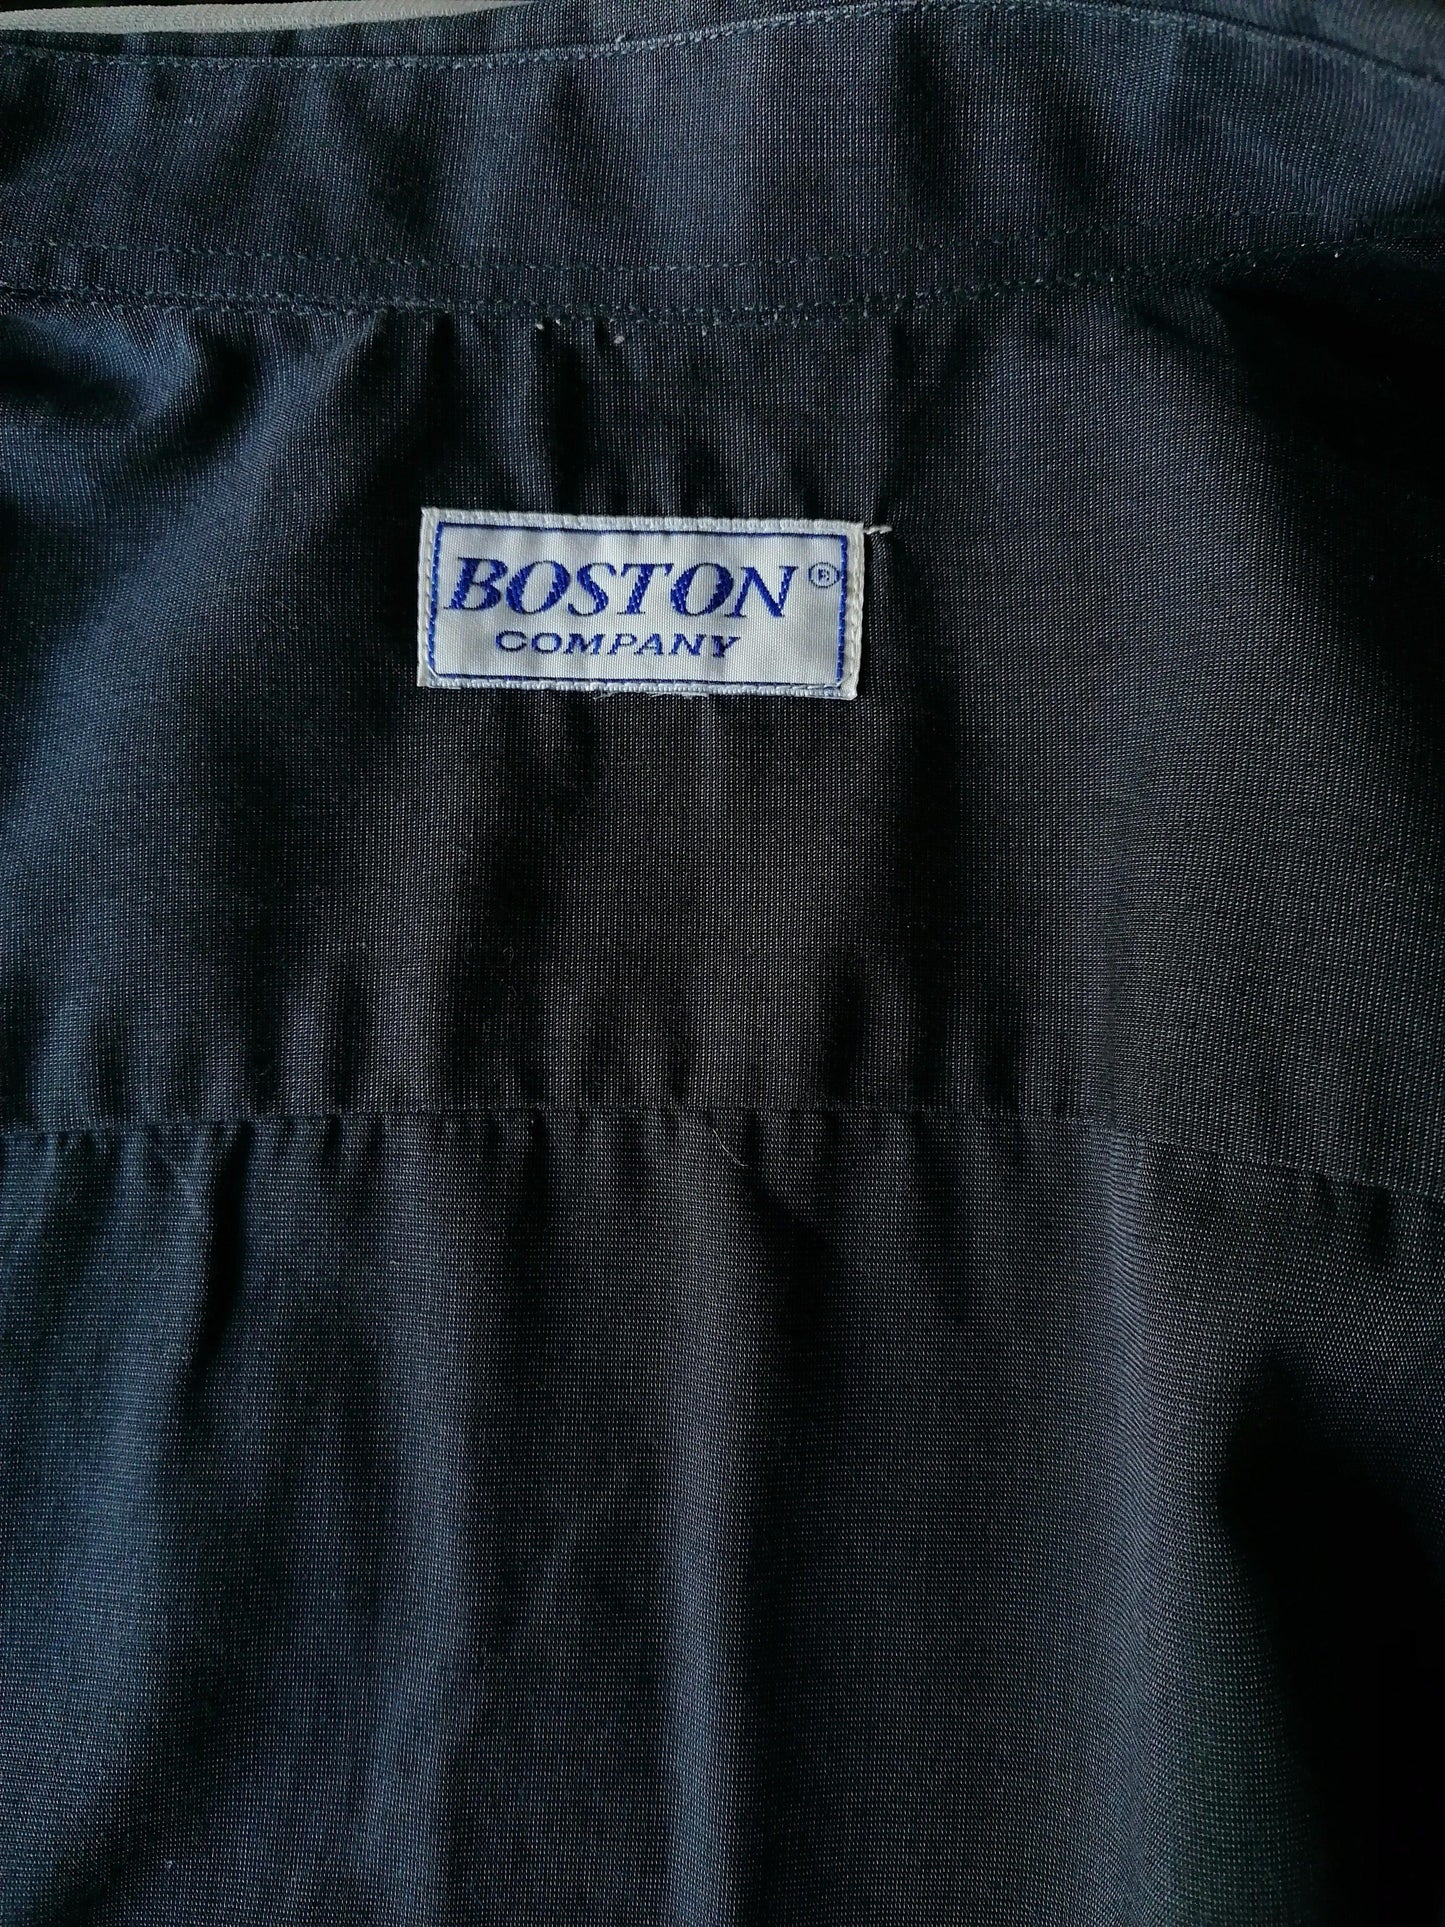 Boston Company overhemd met drukknoop. Zwart. Maat 2XL / XXL - EcoGents